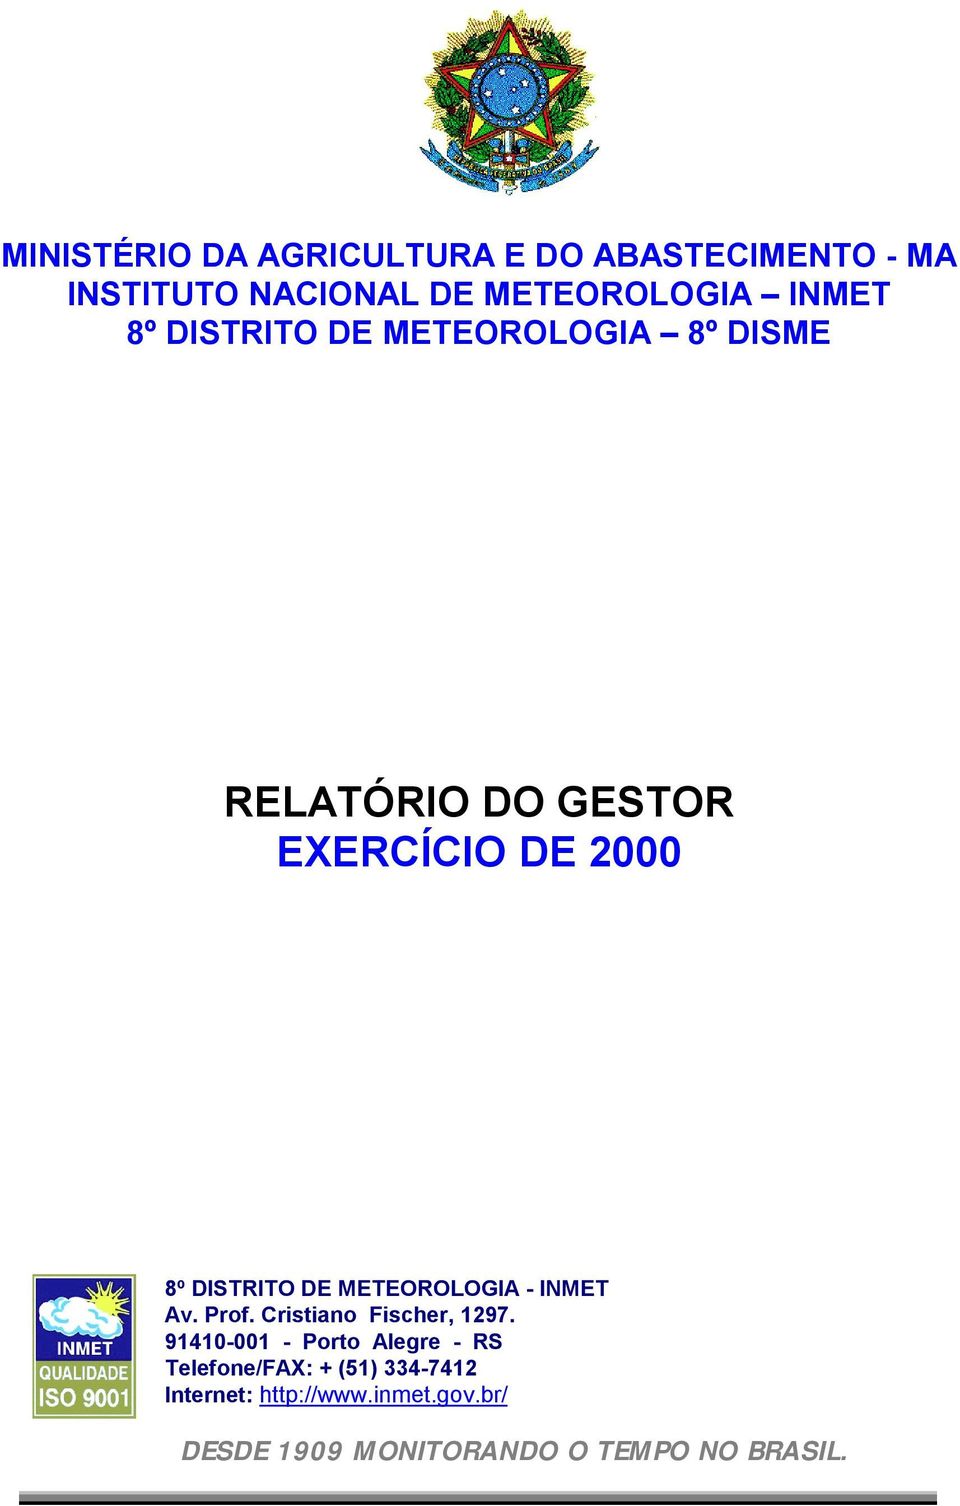 Cristiano Fischer, 1297 91410-001 - Porto Alegre - RS Telefone/FAX: +